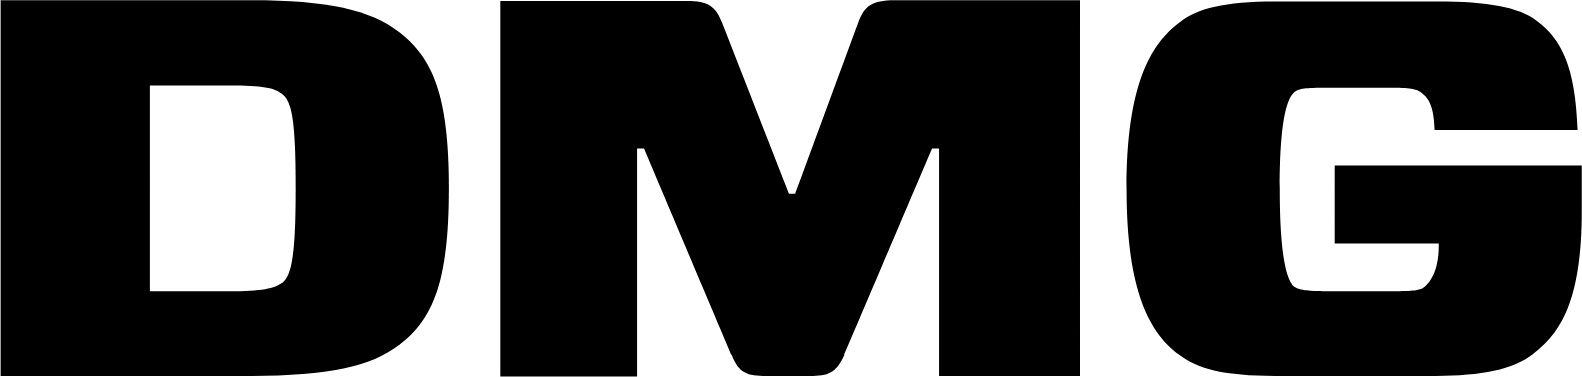 DMG Mori logo (transparent PNG)